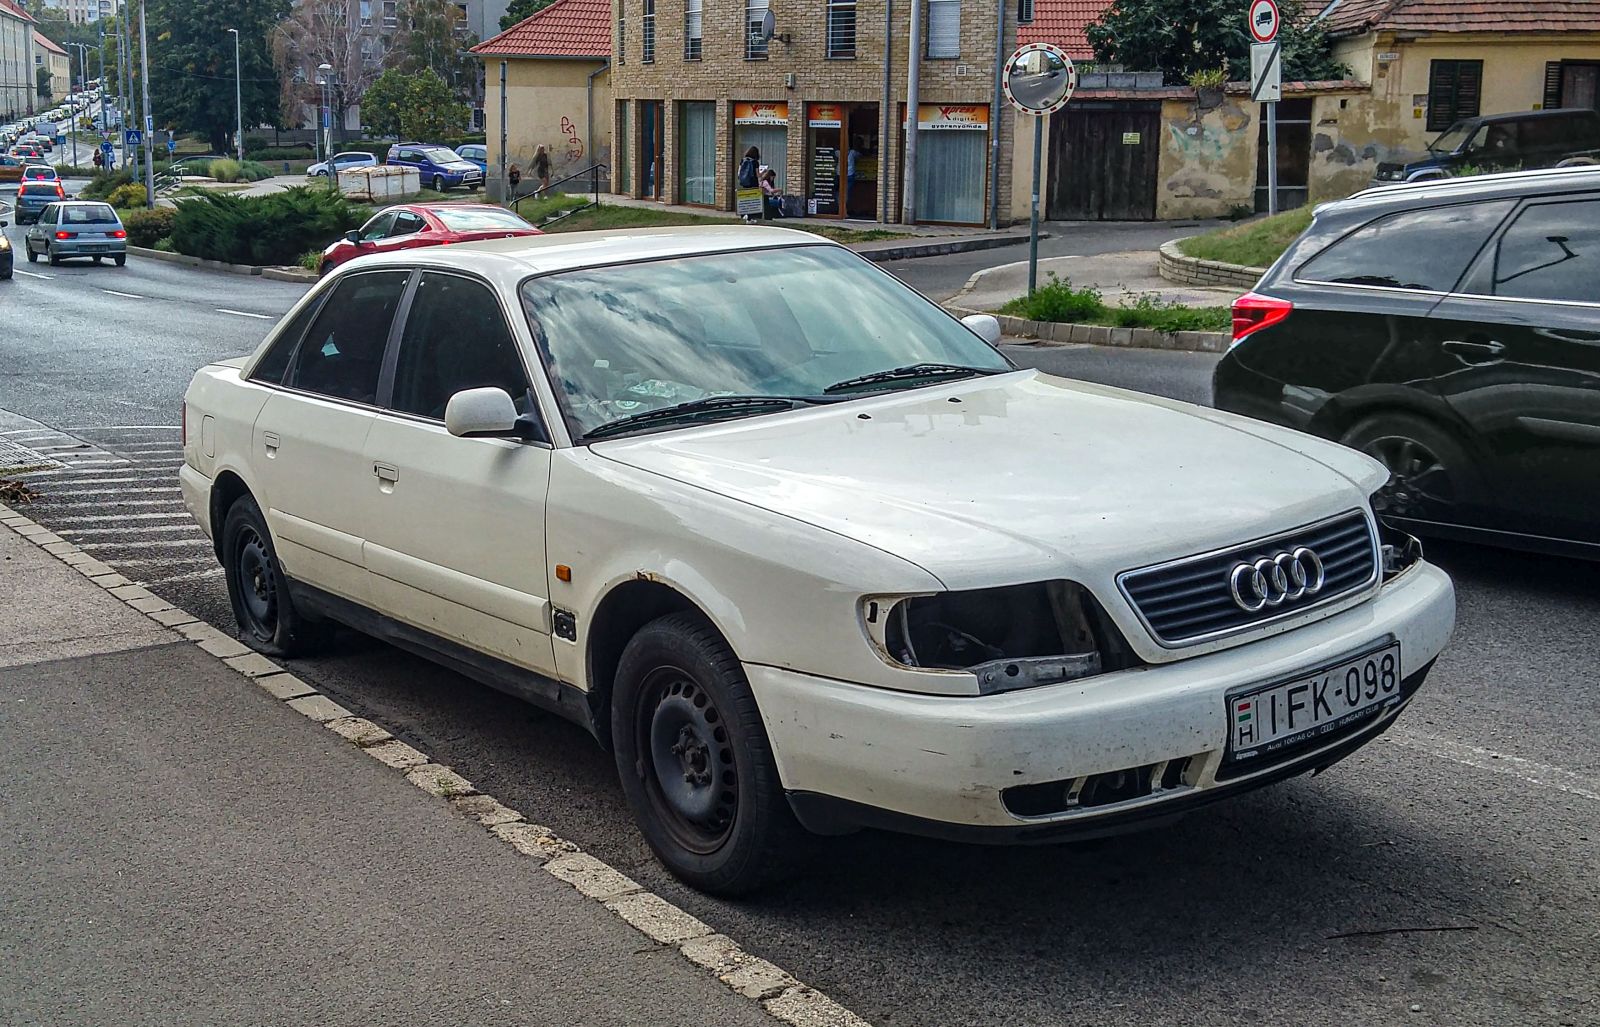 Audi A6 C4, gefunden in schlechtem Zustand in September, 2021.